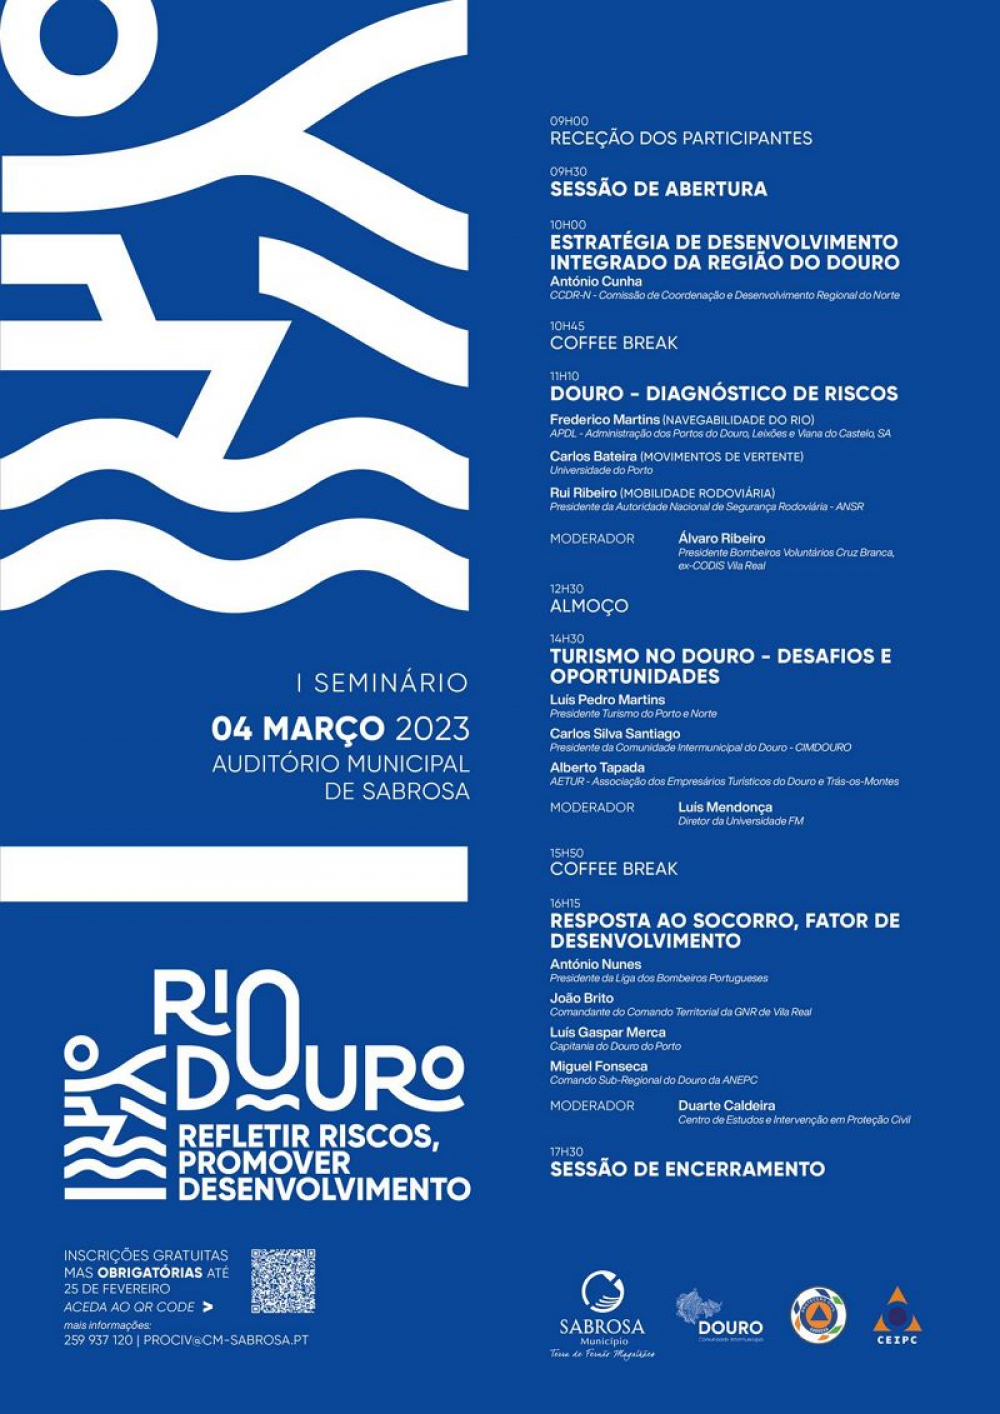 Sabrosa lança debate sobre riscos para promover segurança no Douro